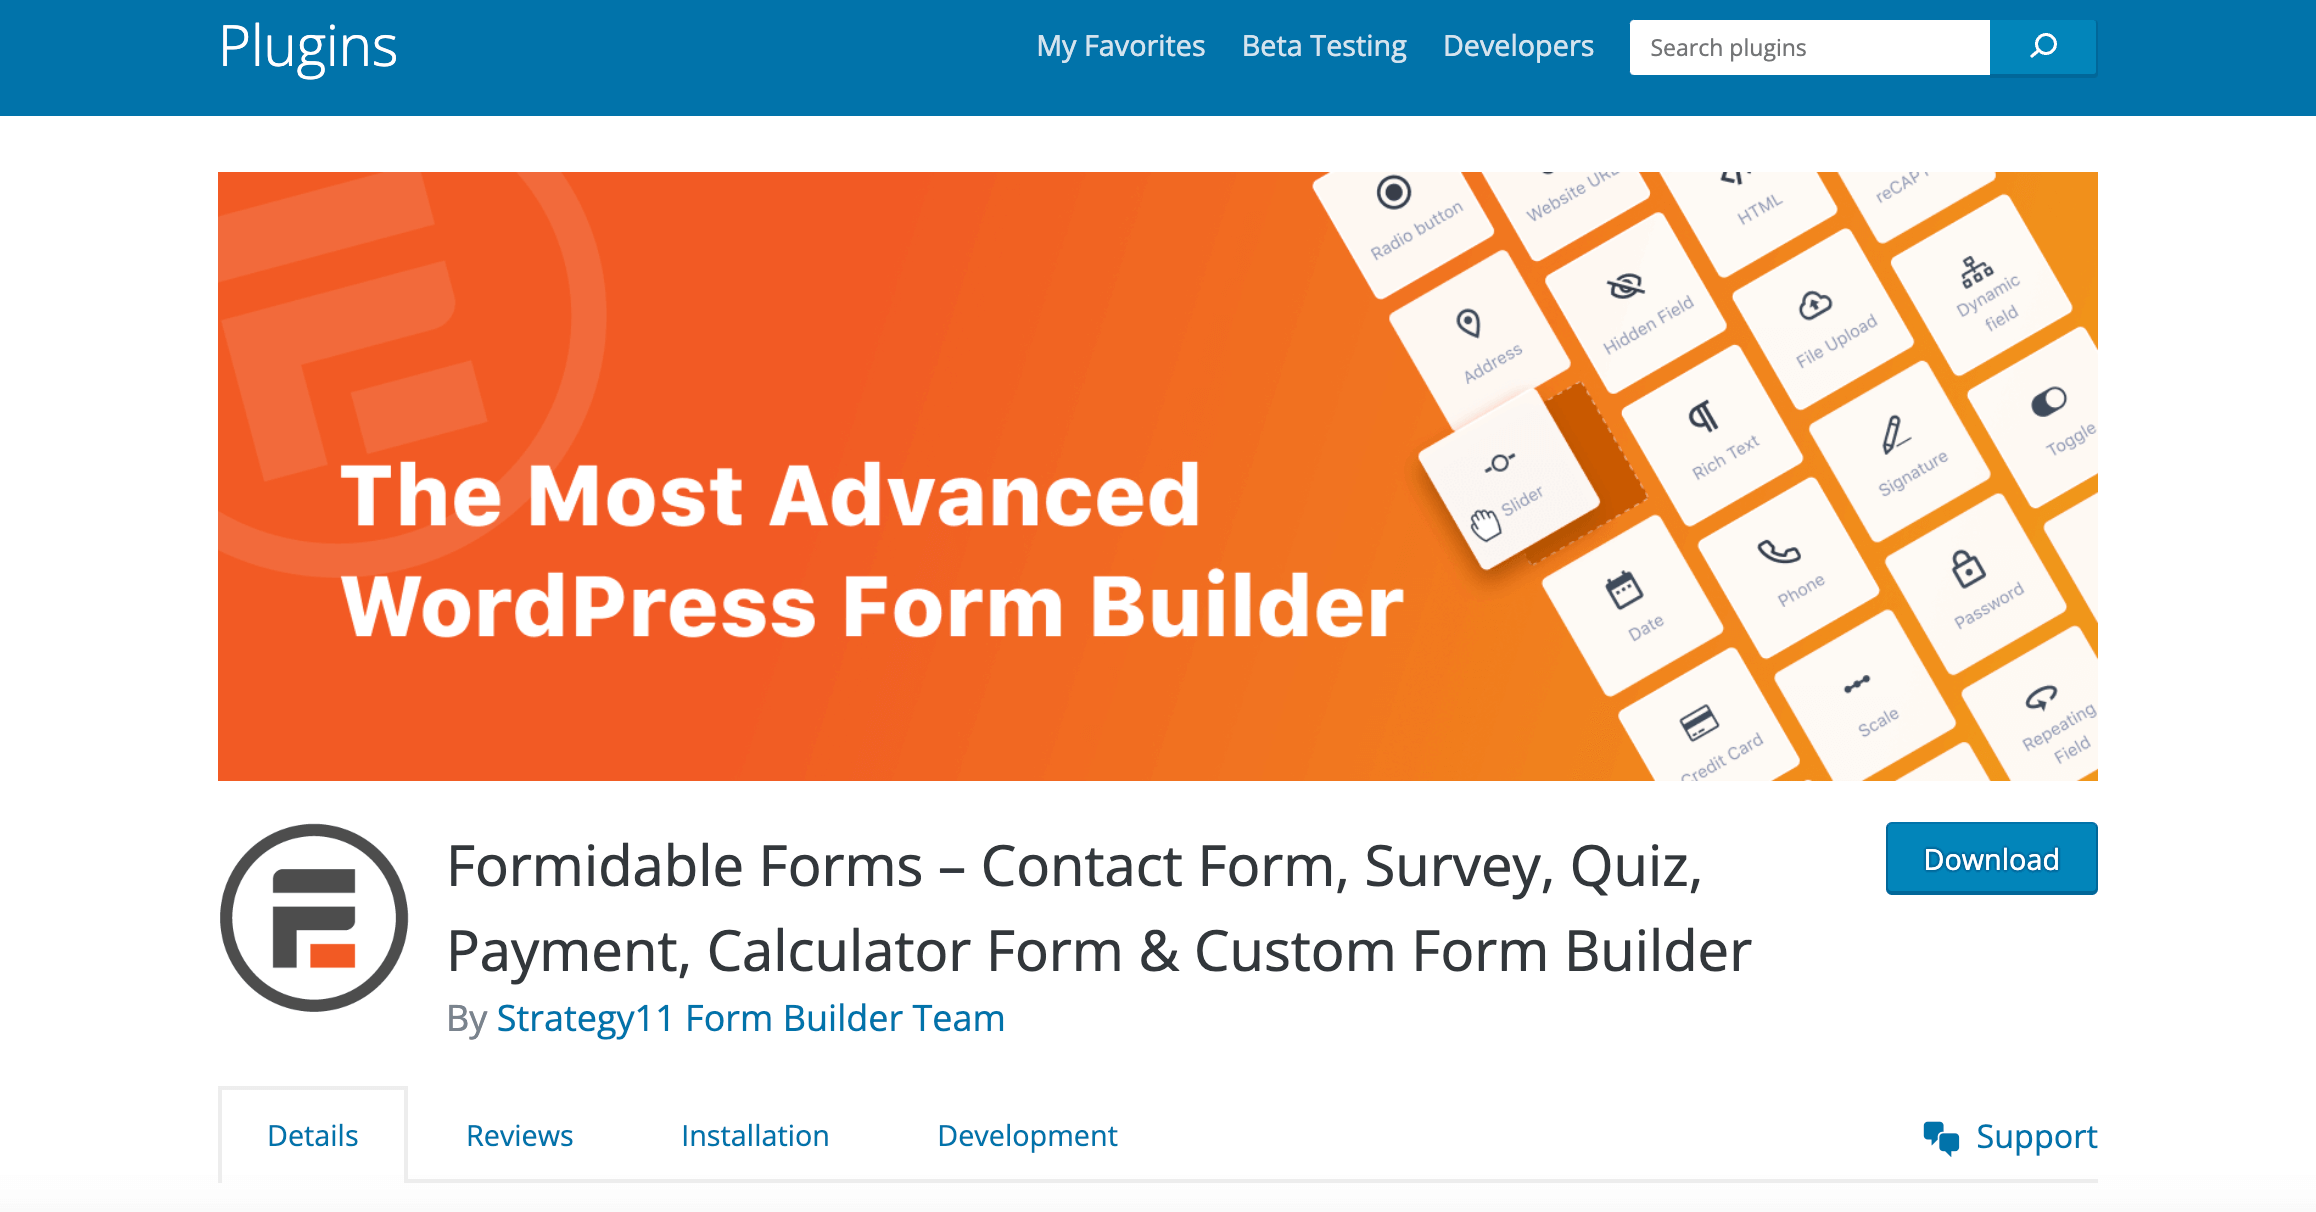 Formidable Forms, a WordPress reCAPTCHA Contact Form 7 alternative